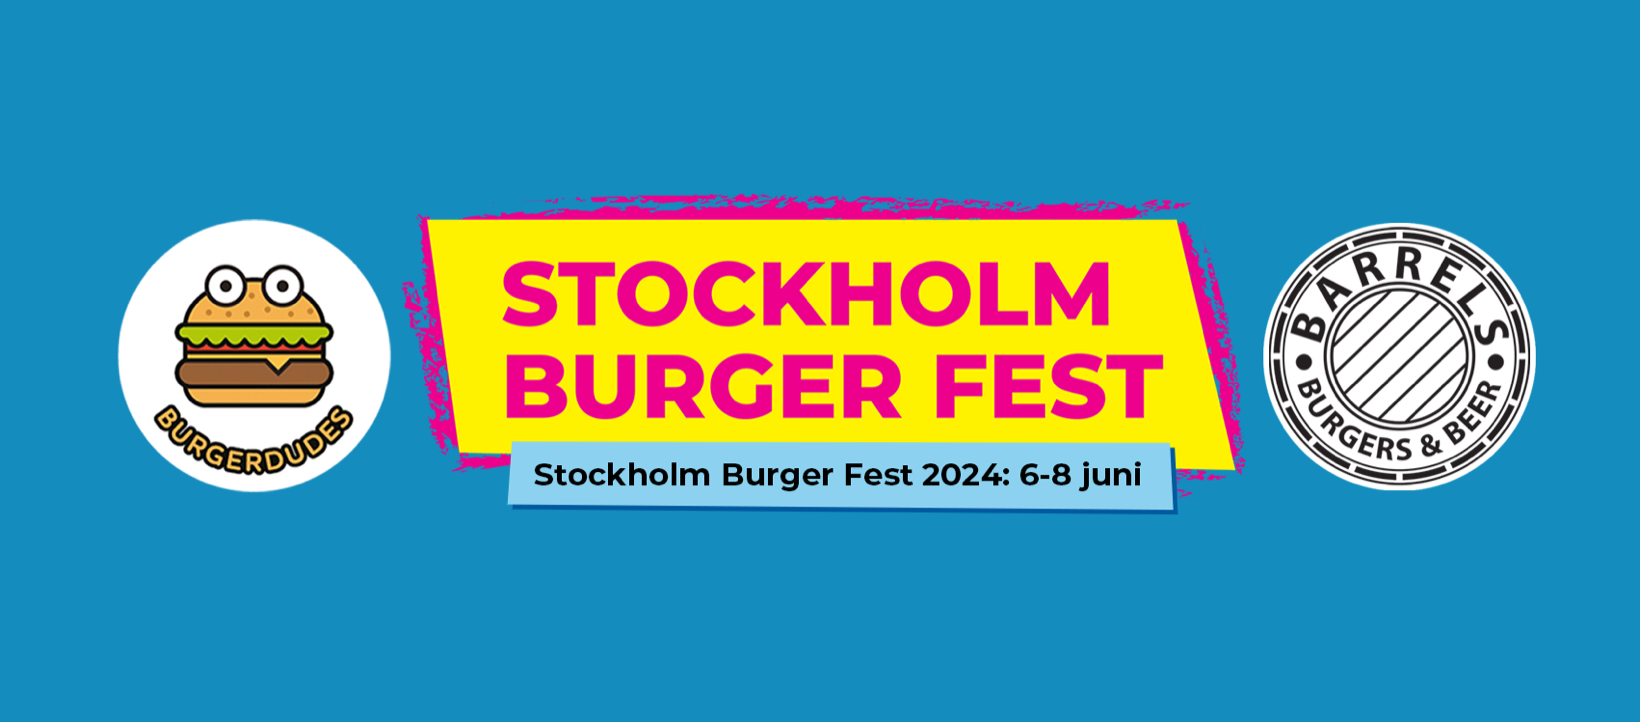 Stockholm Burger Fest 2024